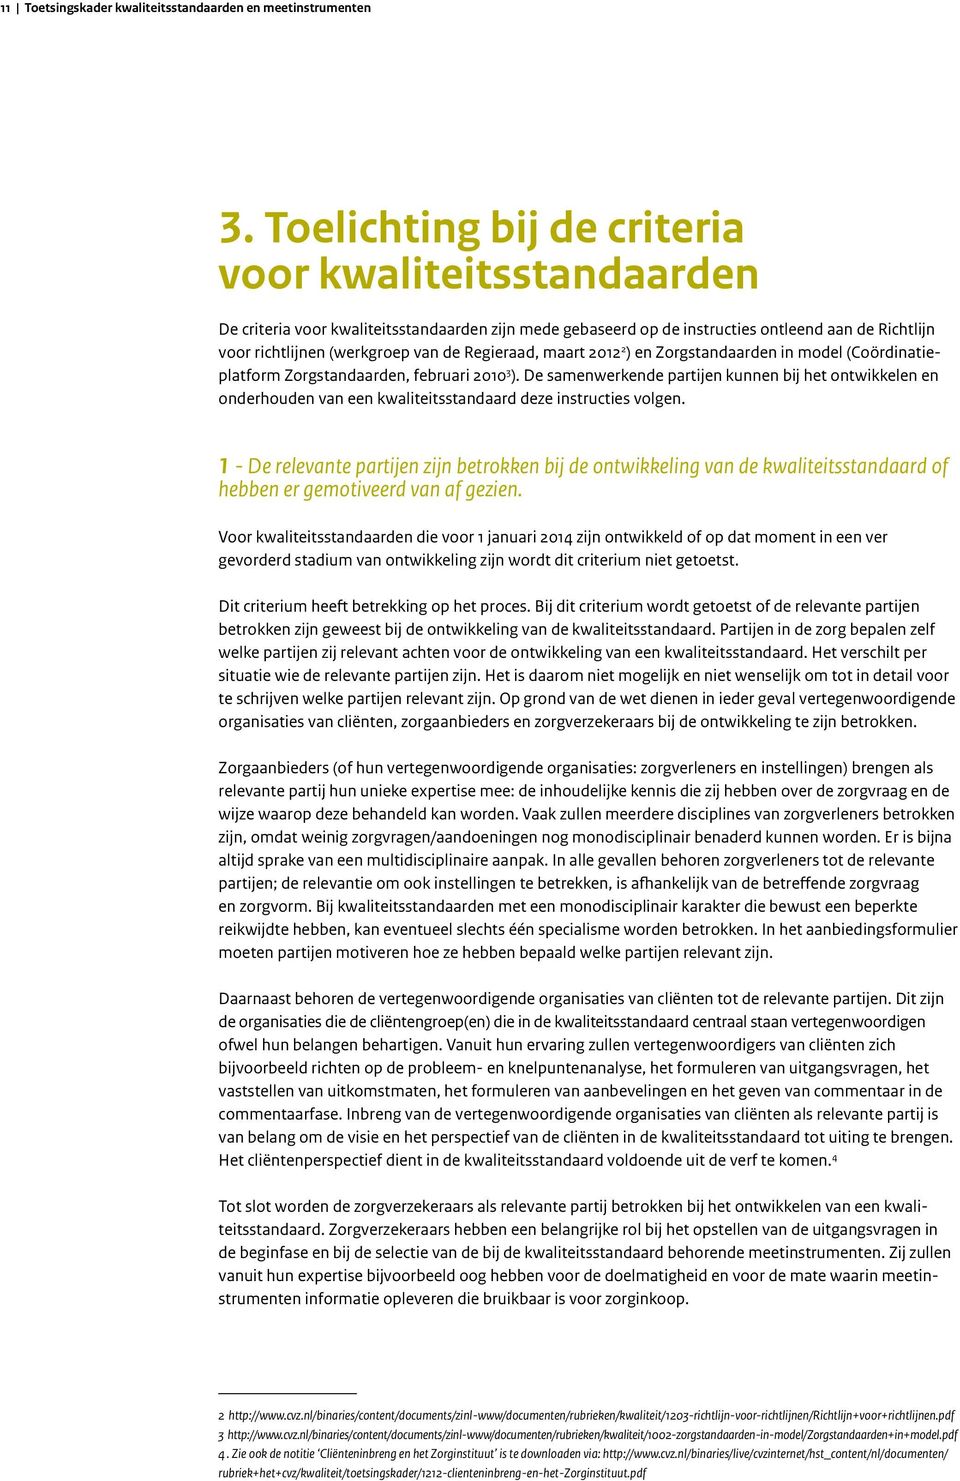 Regieraad, maart 2012 2 ) en Zorgstandaarden in model (Coördinatieplatform Zorgstandaarden, februari 2010 3 ).